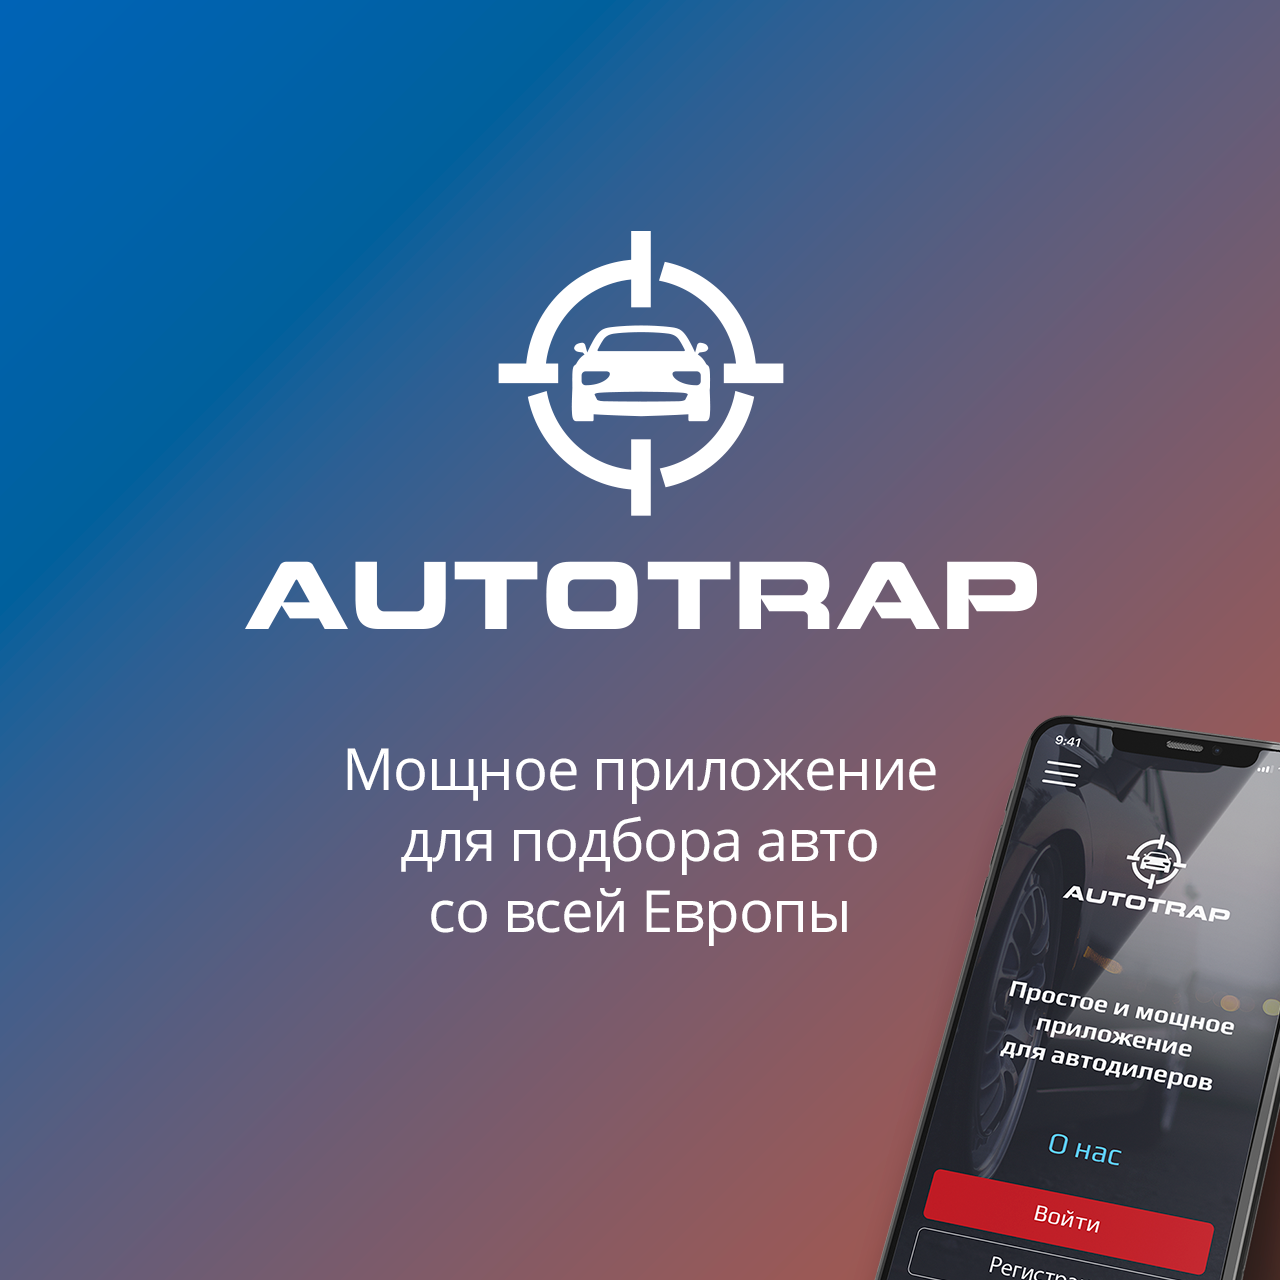 Логотип, веб-сервис и мобильное приложение AutoTrap